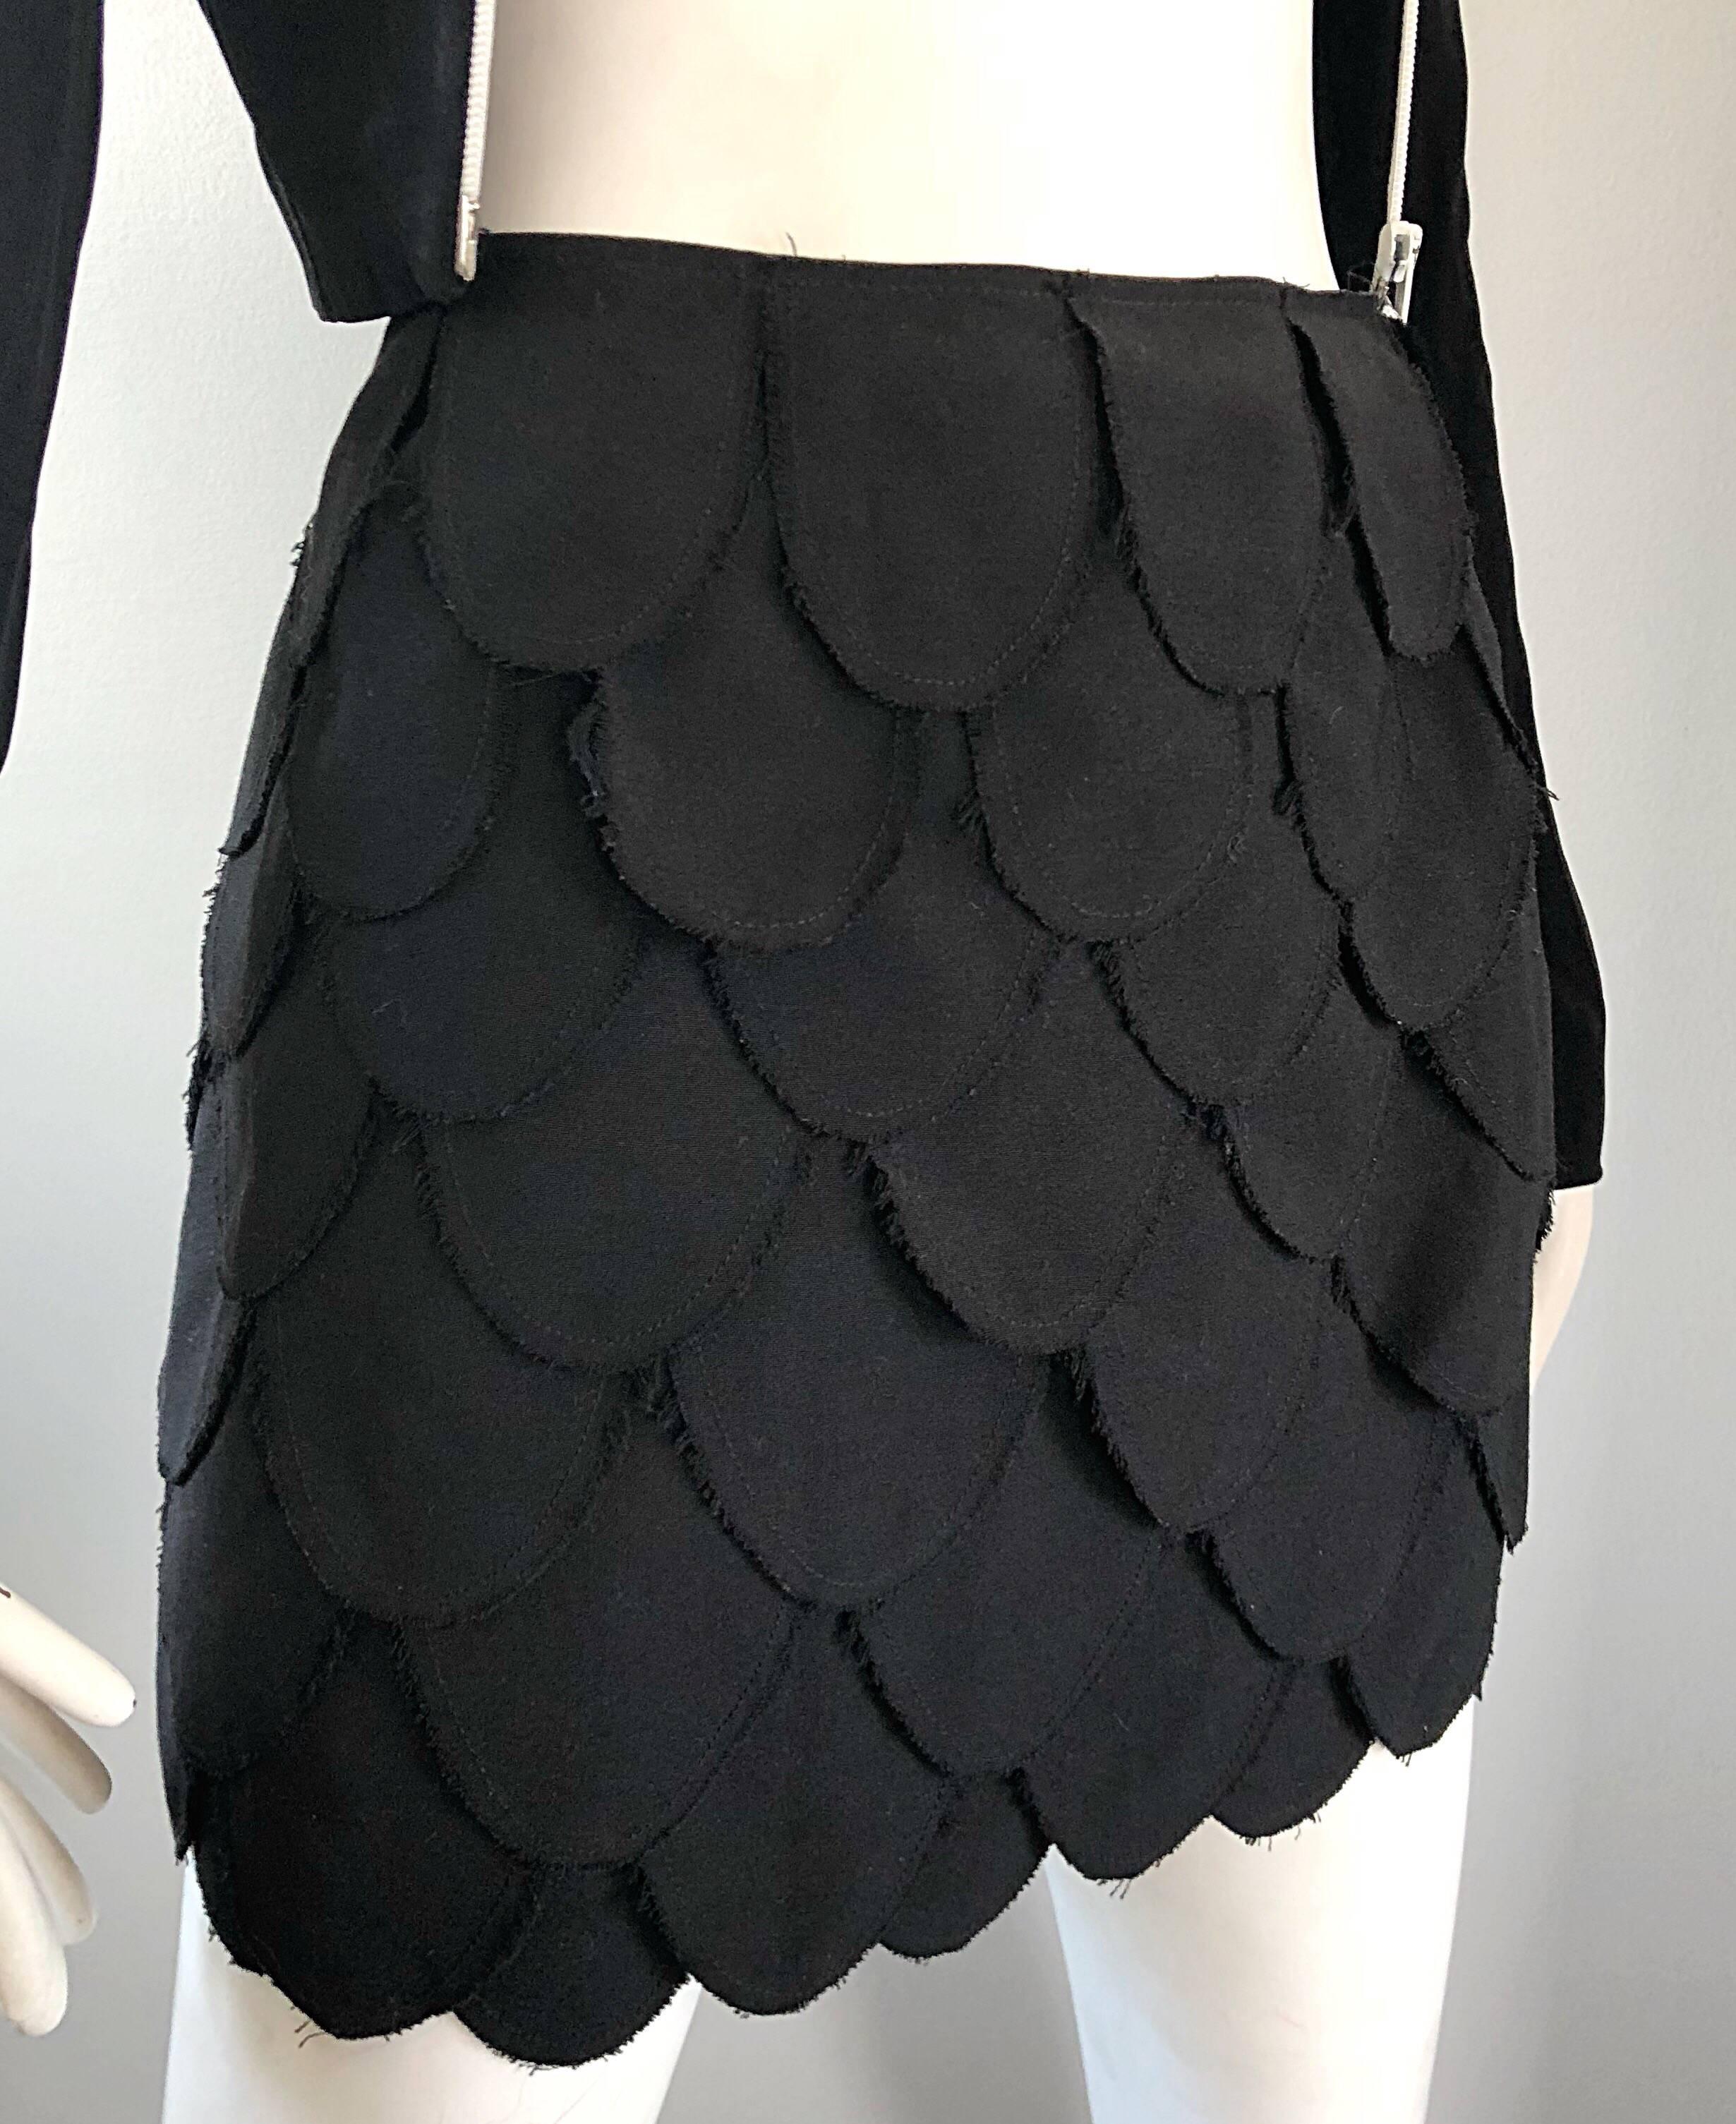 Moschino Dark Gray Wool Mini Pencil Skirt Size 4